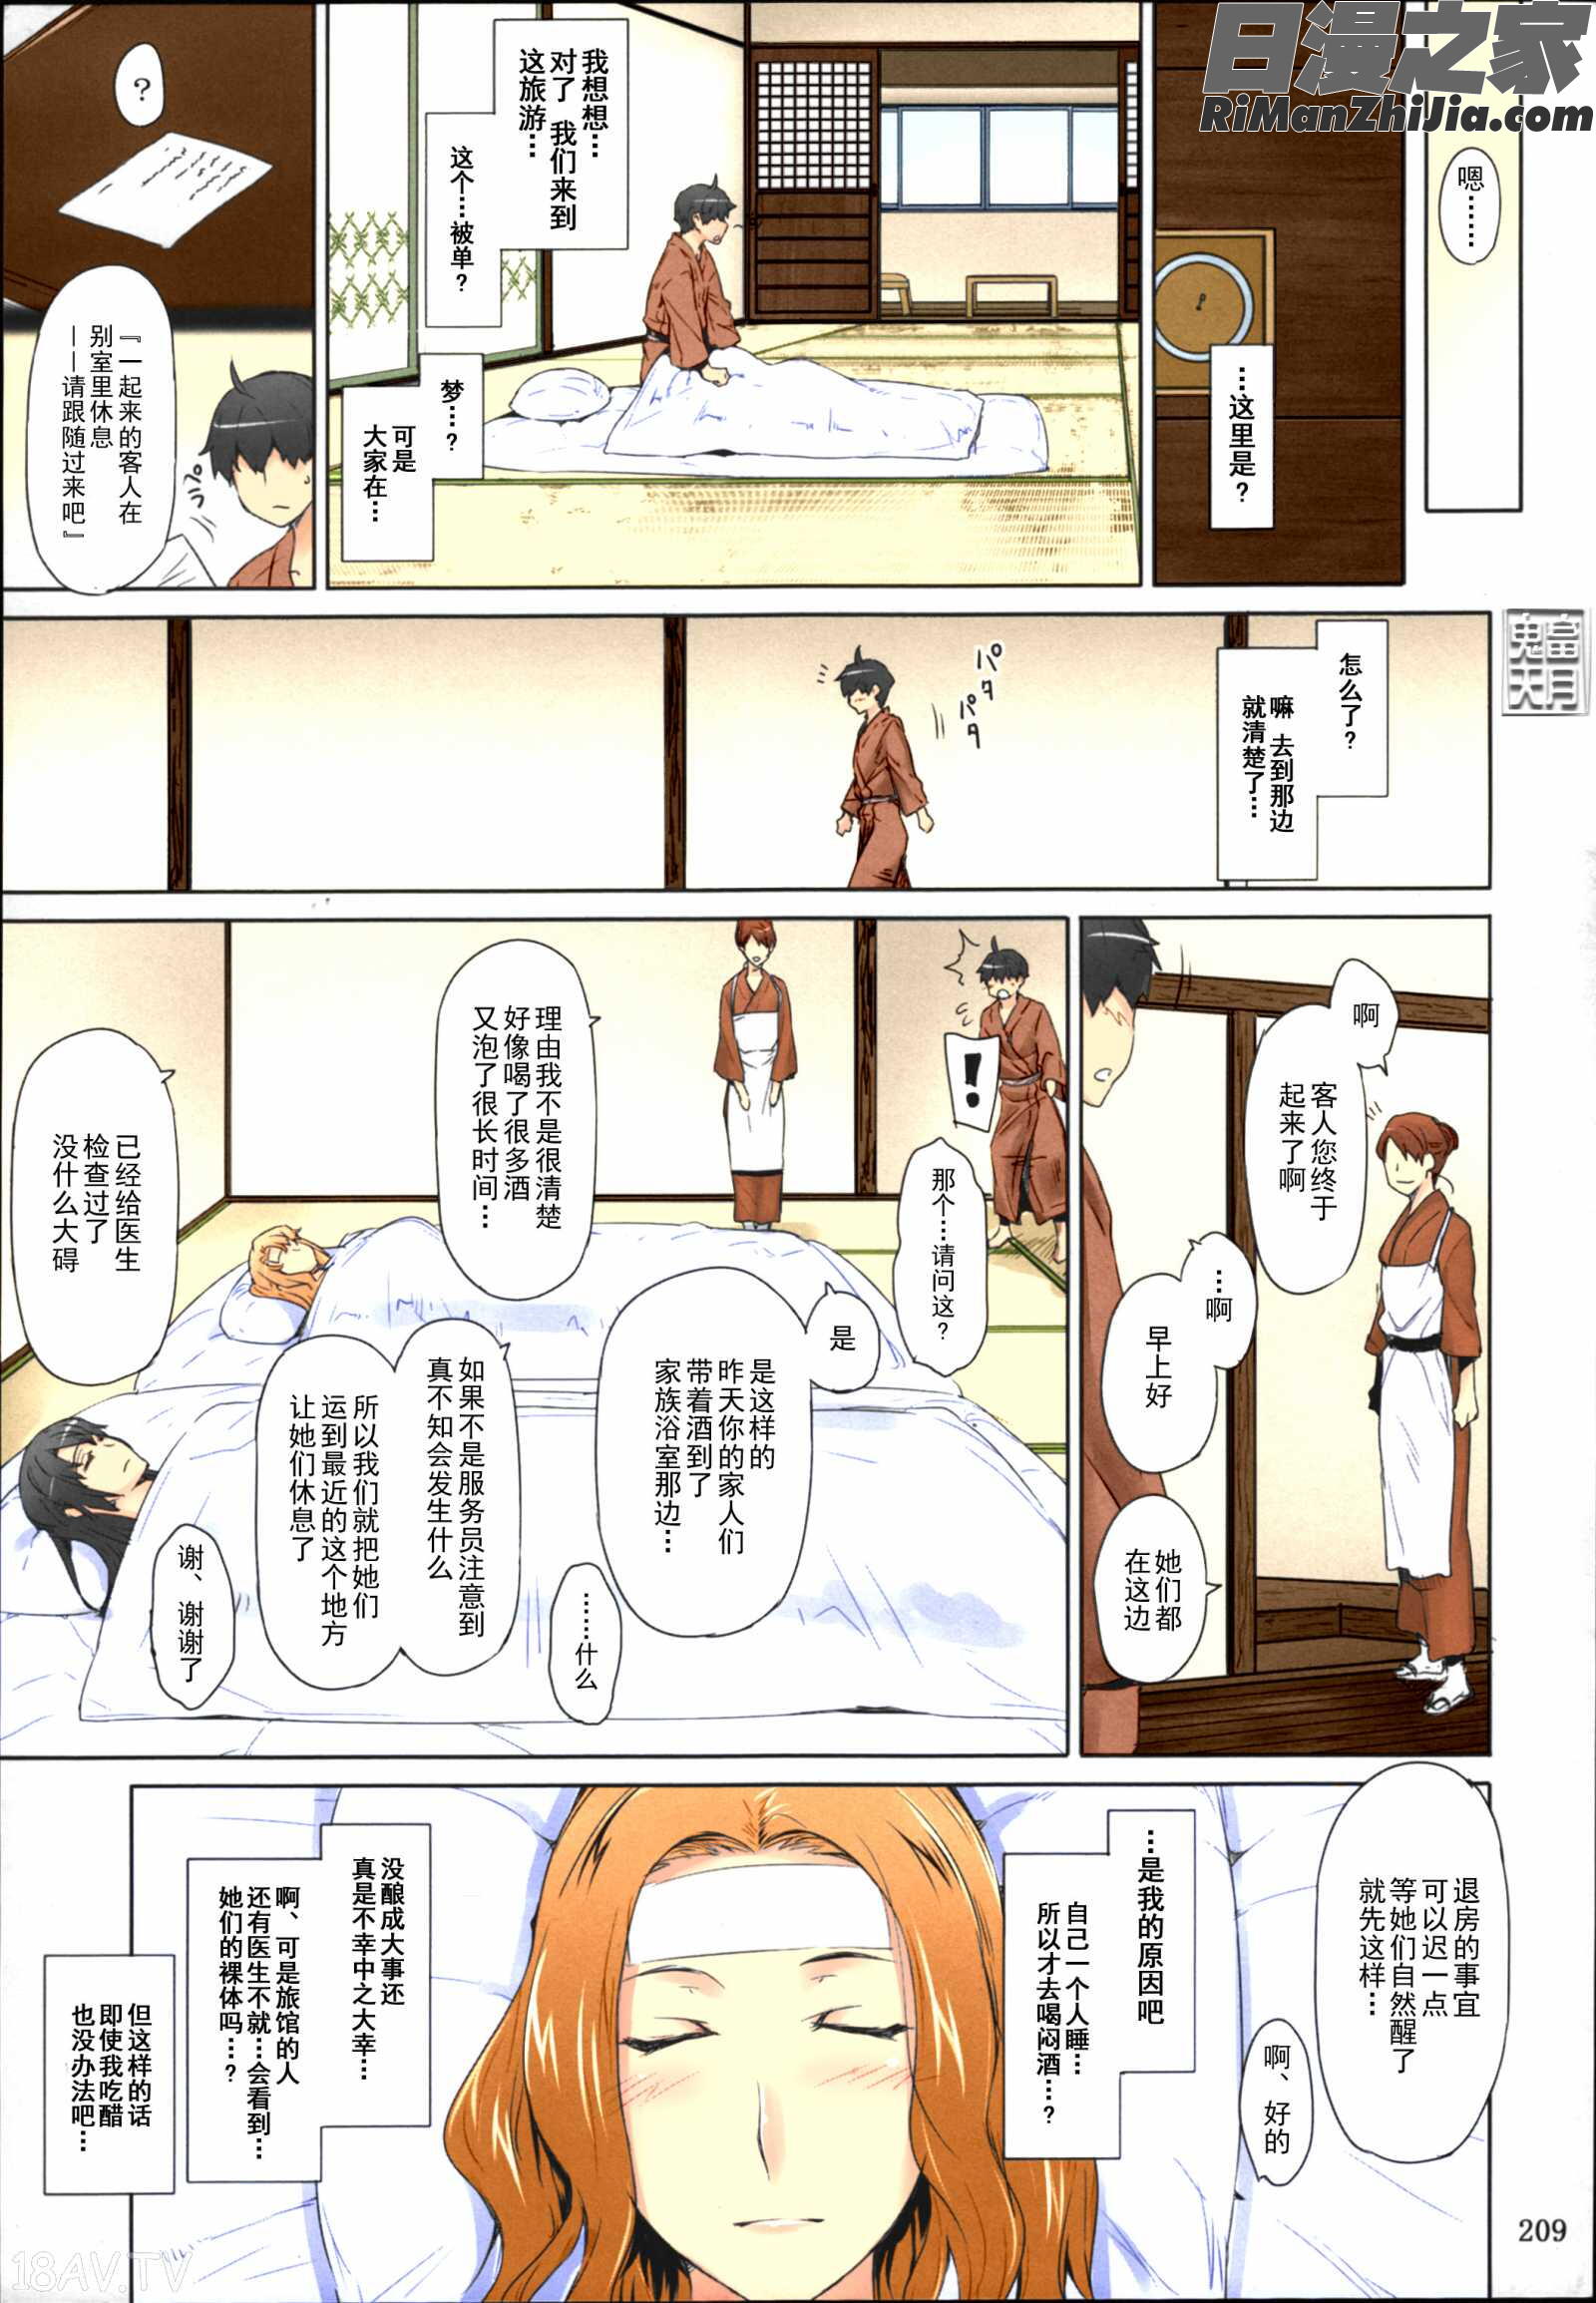 橘さん家ノ男性事情まとめ版漫画 免费阅读 整部漫画 211.jpg